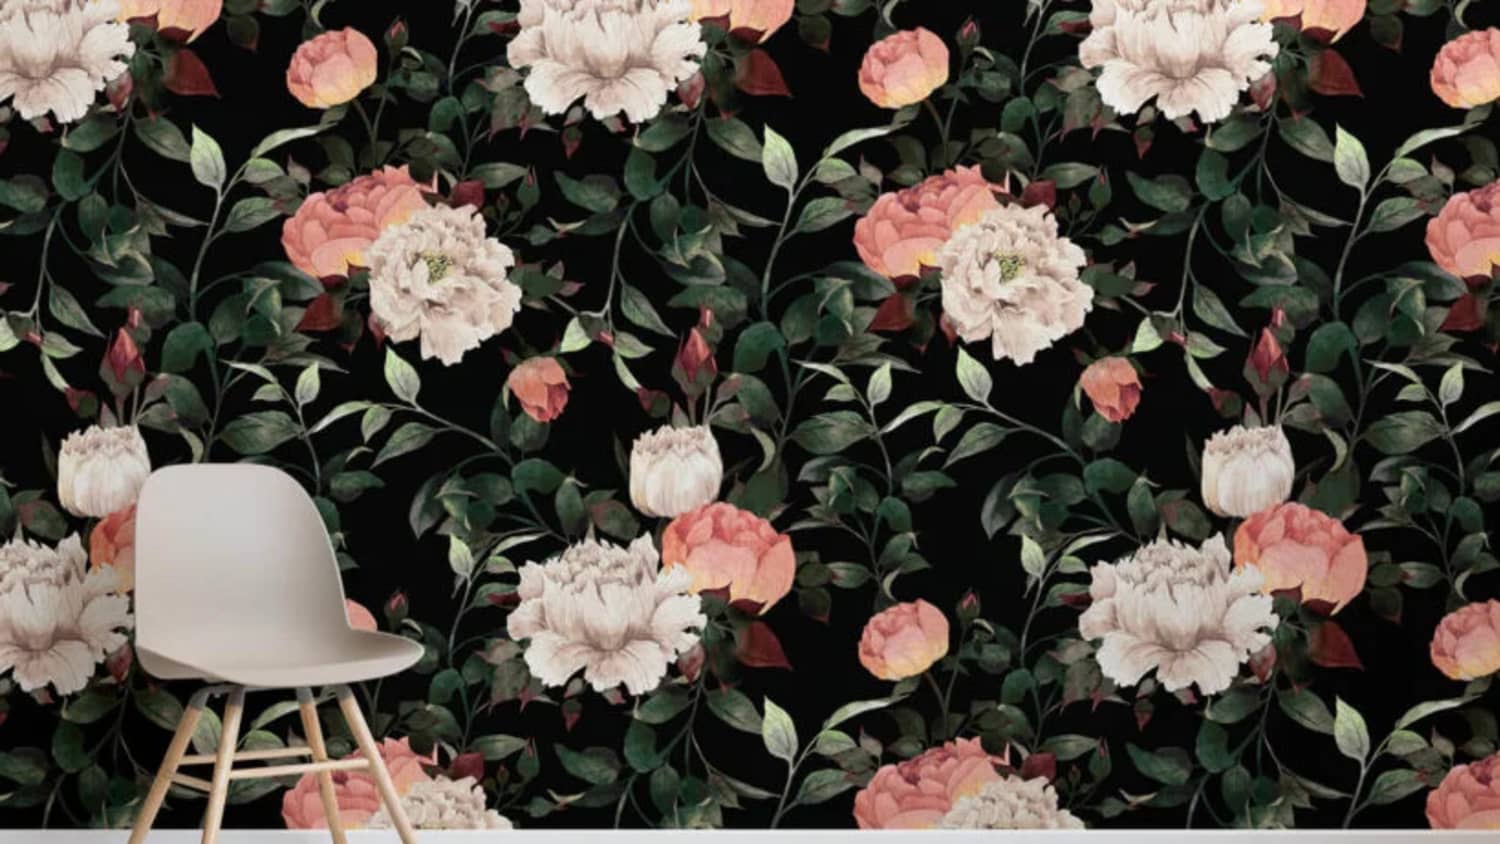 Trang twitter OS Wallpapers mới đây đã tung ra hình nền đầy mùa xuân cho điện thoại. Với sự pha trộn giữa các màu sắc tươi tắn, hình ảnh cỏ cây, hoa lá và ánh nắng, dễ dàng khiến bạn yêu thích mùa xuân.